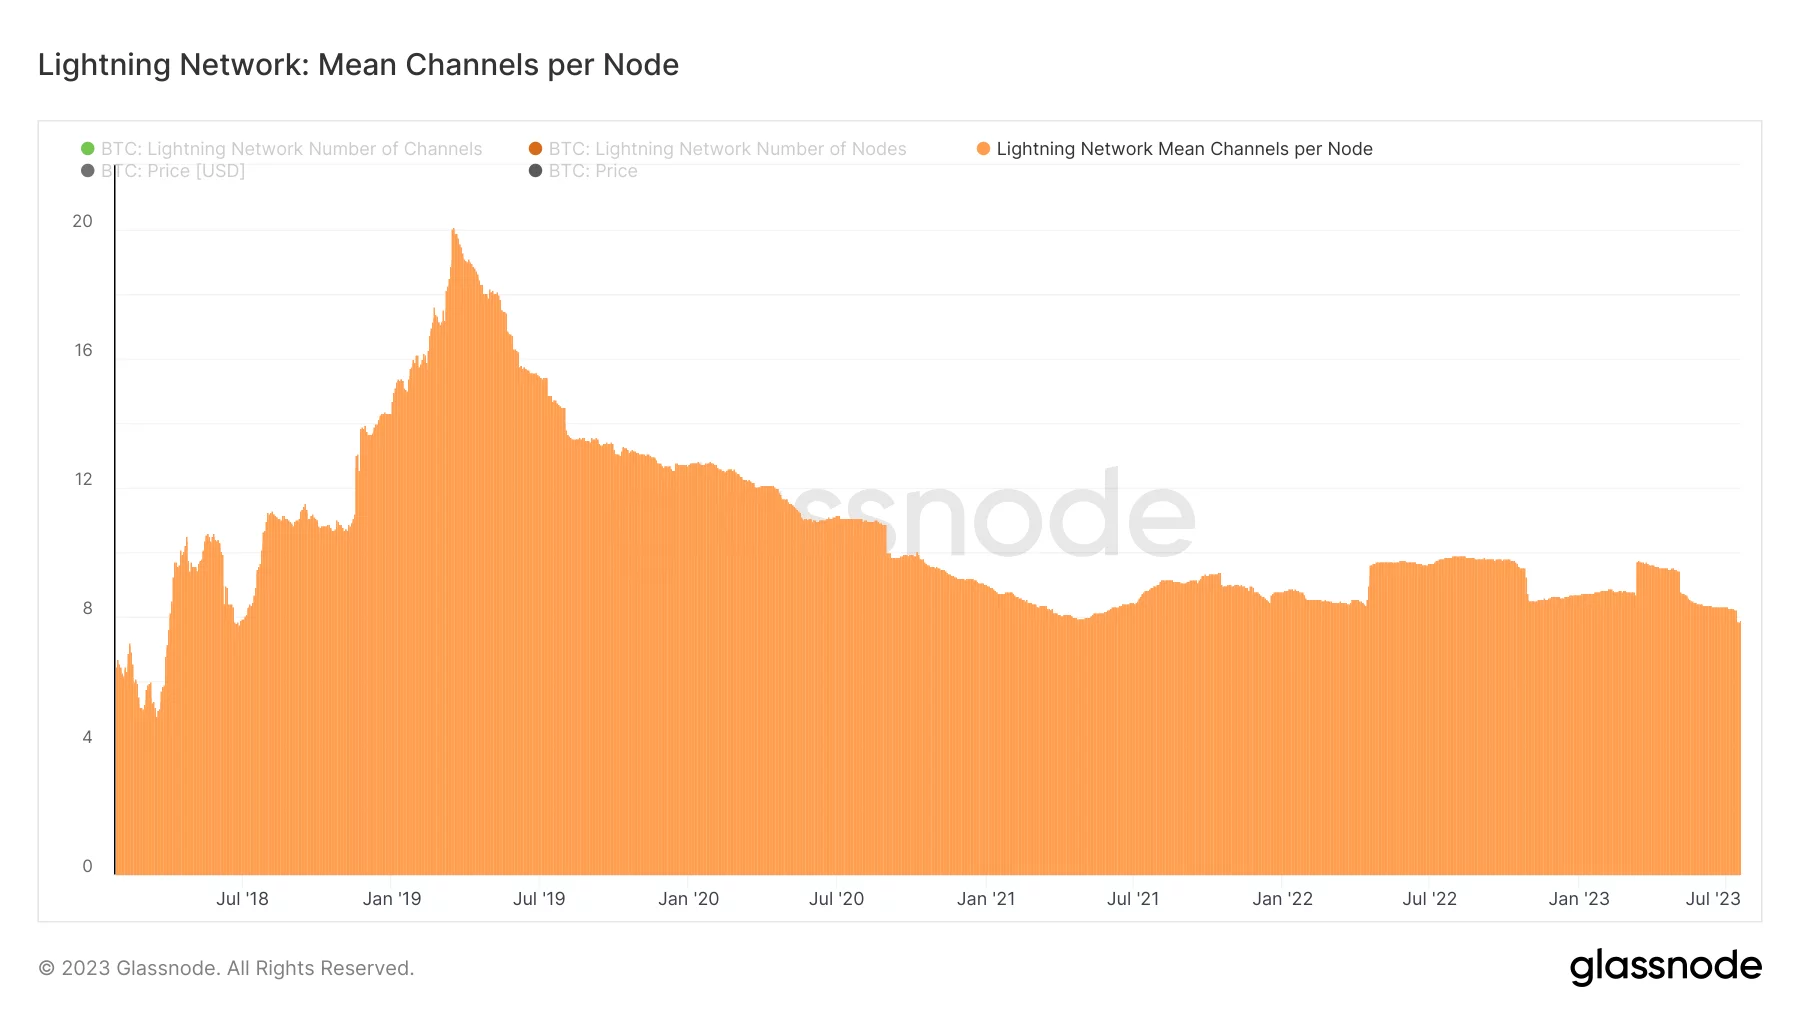 図4 - ライトニング・ネットワークのノードあたりの平均チャンネル数